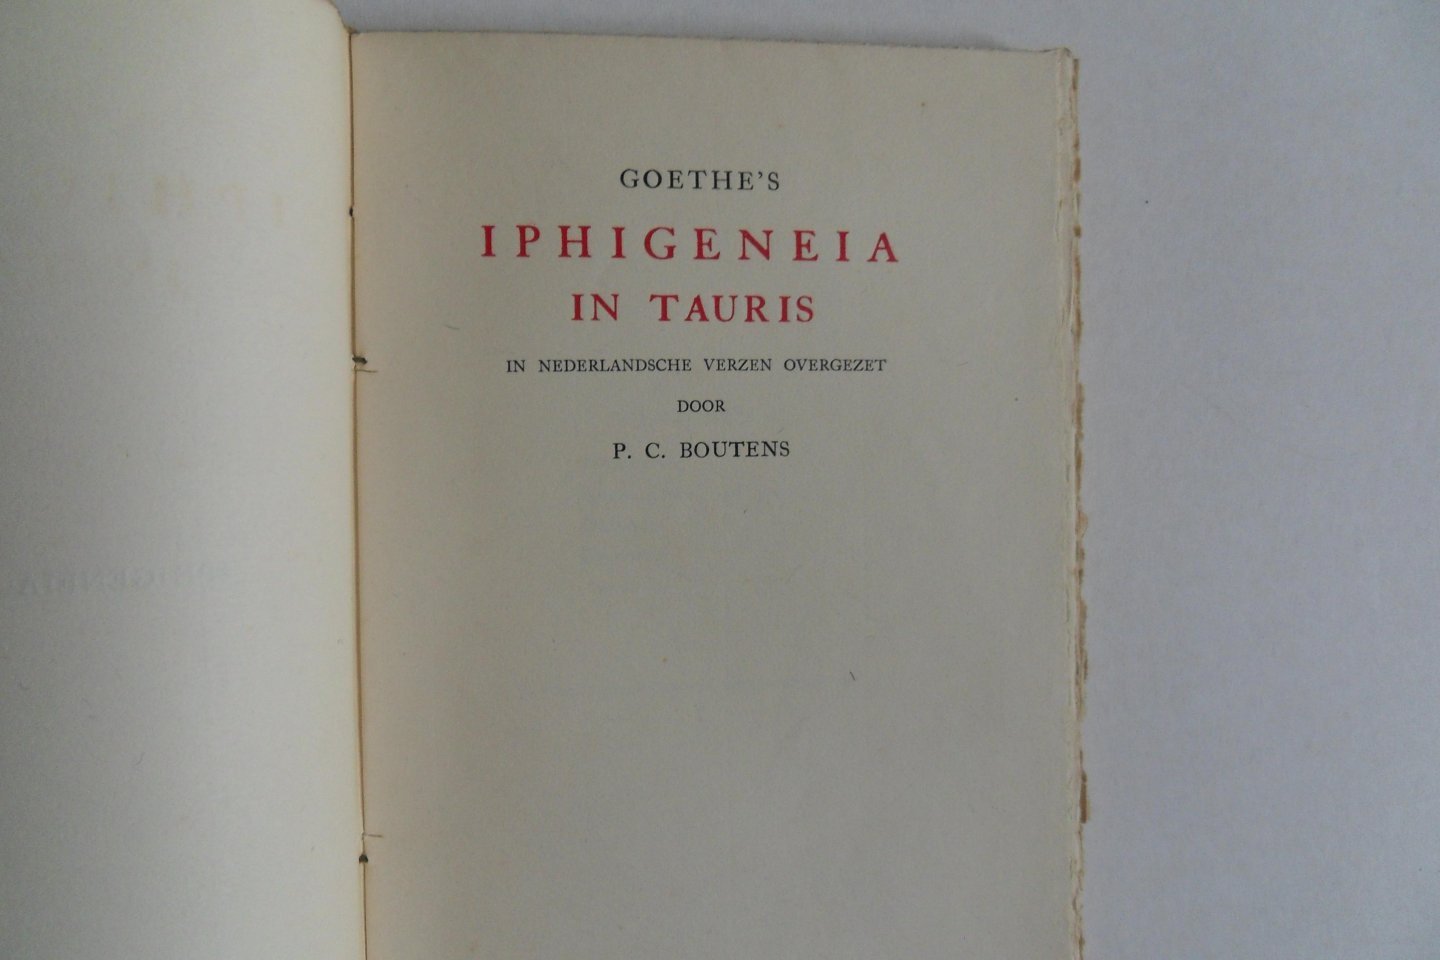 Boutens, P.C. - Goethe`s Iphigeneia in Tauris. - In Nederlandsche verzen overgezet door P.C. Boutens. [ Beperkte oplage van slechts 50 exemplaren ].